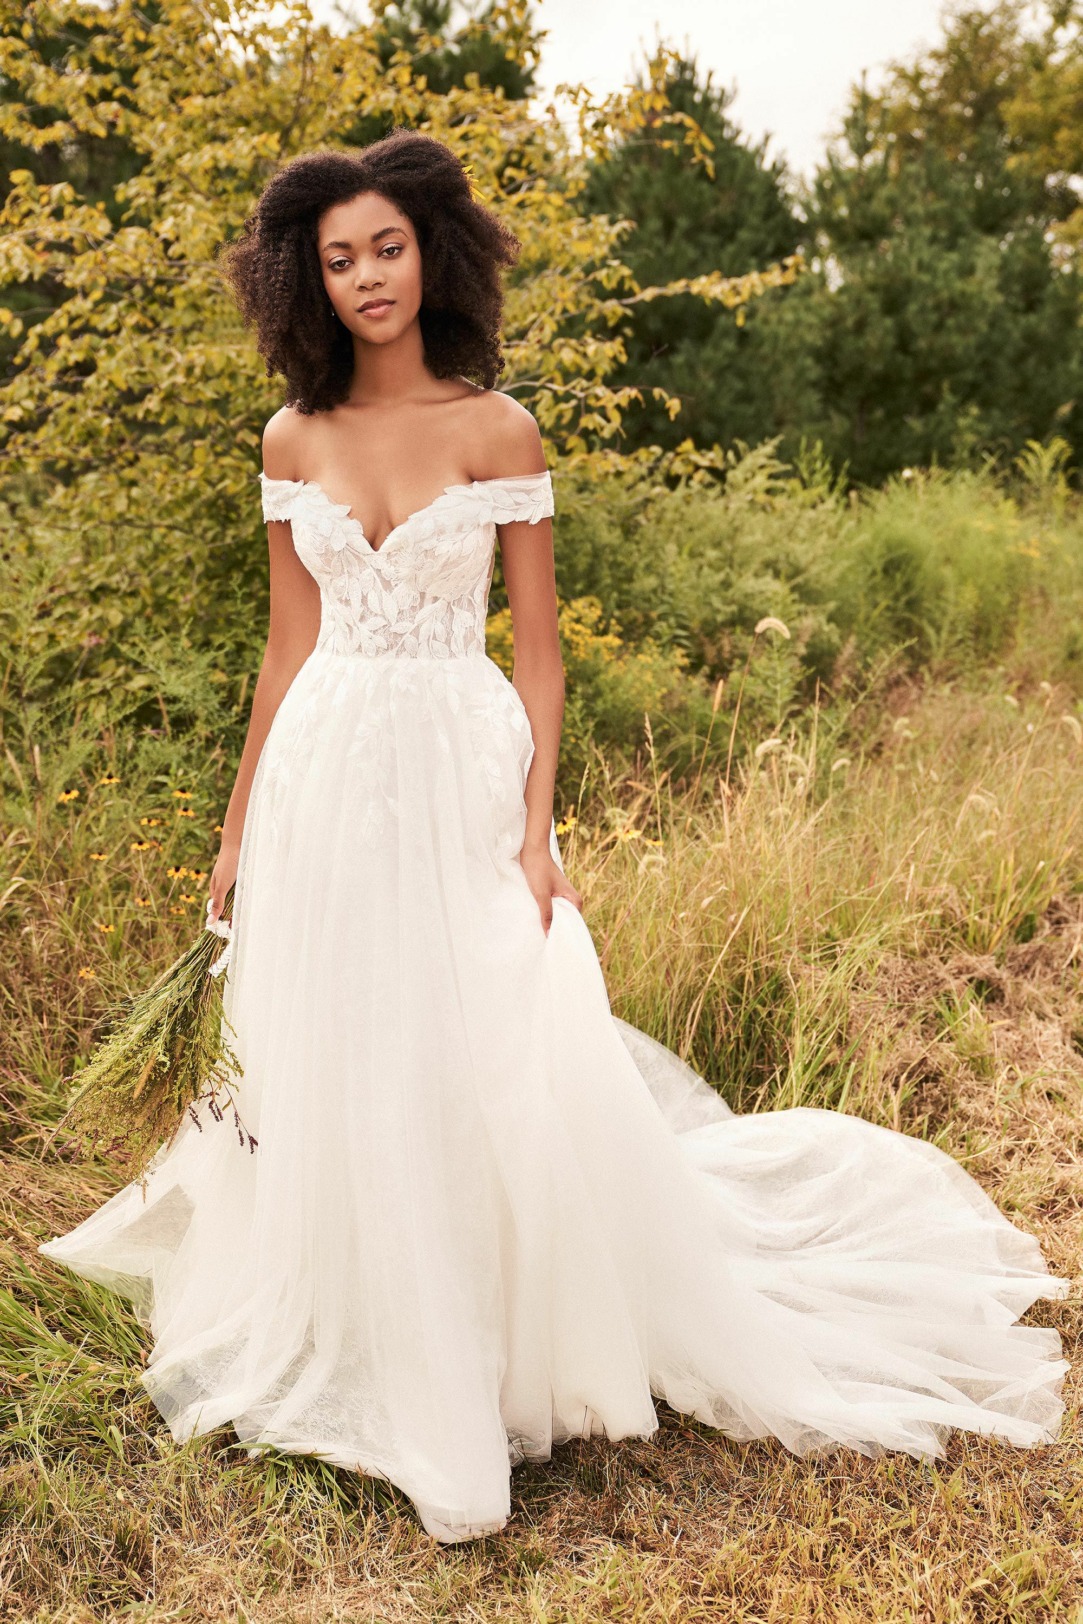 Hochzeitskleider Brautkleider im Vintage Stil Modell 66196 ein wunderschönes off-shoulder Kleid mit weicher Spitze und verspieltem mehrlagigem Tüllrock